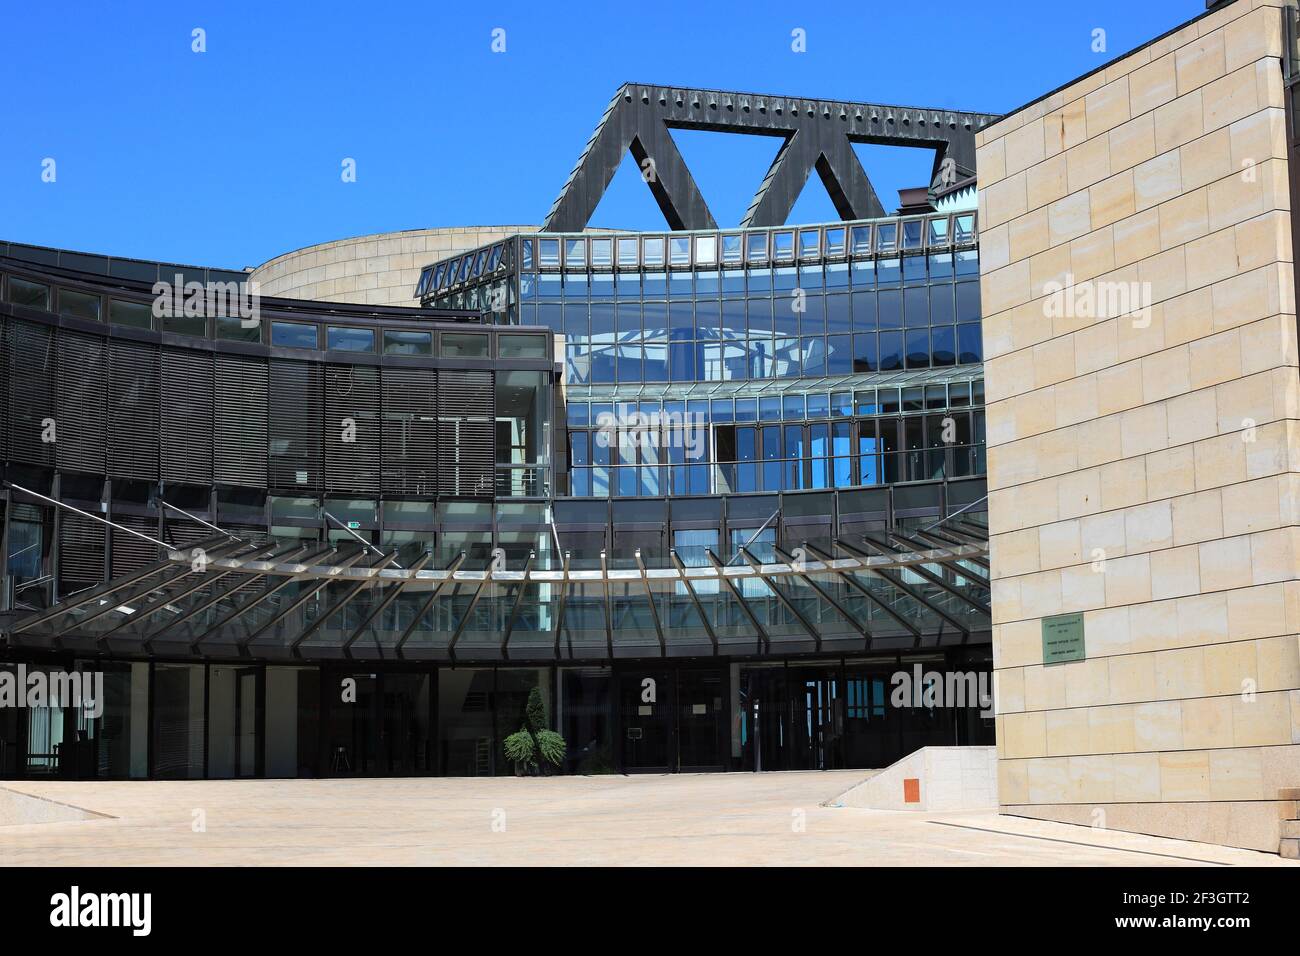 Landtagsgebäude Nordrhein-Westfalen, Haus des Landtages, Stromstraße, Regierungsviertel, Düsseldorf, Nordrhein-Westfalen, Deutschland Stock Photo